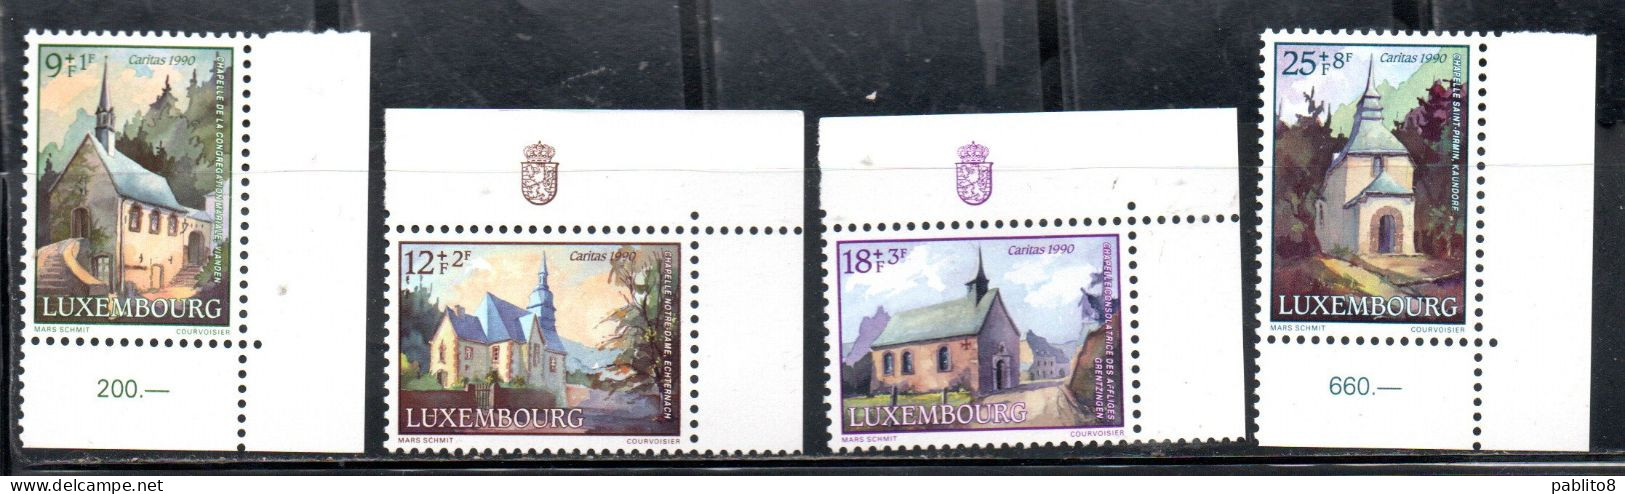 LUXEMBOURG LUSSEMBURGO 1990 CHRISTMAS NATALE NOEL WEIHNACHTEN NAVIDAD COMPLETE SET SERIE COMPLETA MNH - Unused Stamps